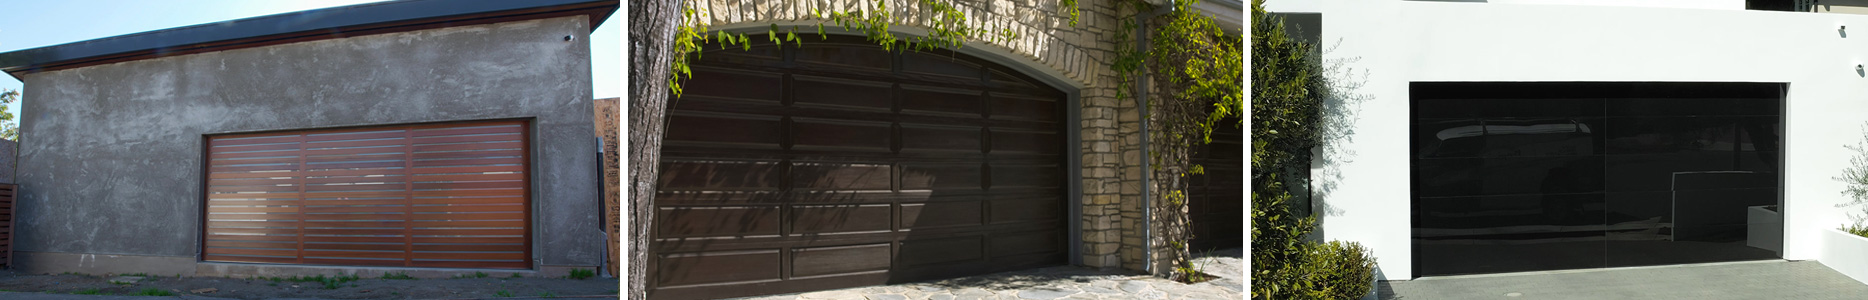 Precision Garage Doors Of Southern, 18×7 Garage Door